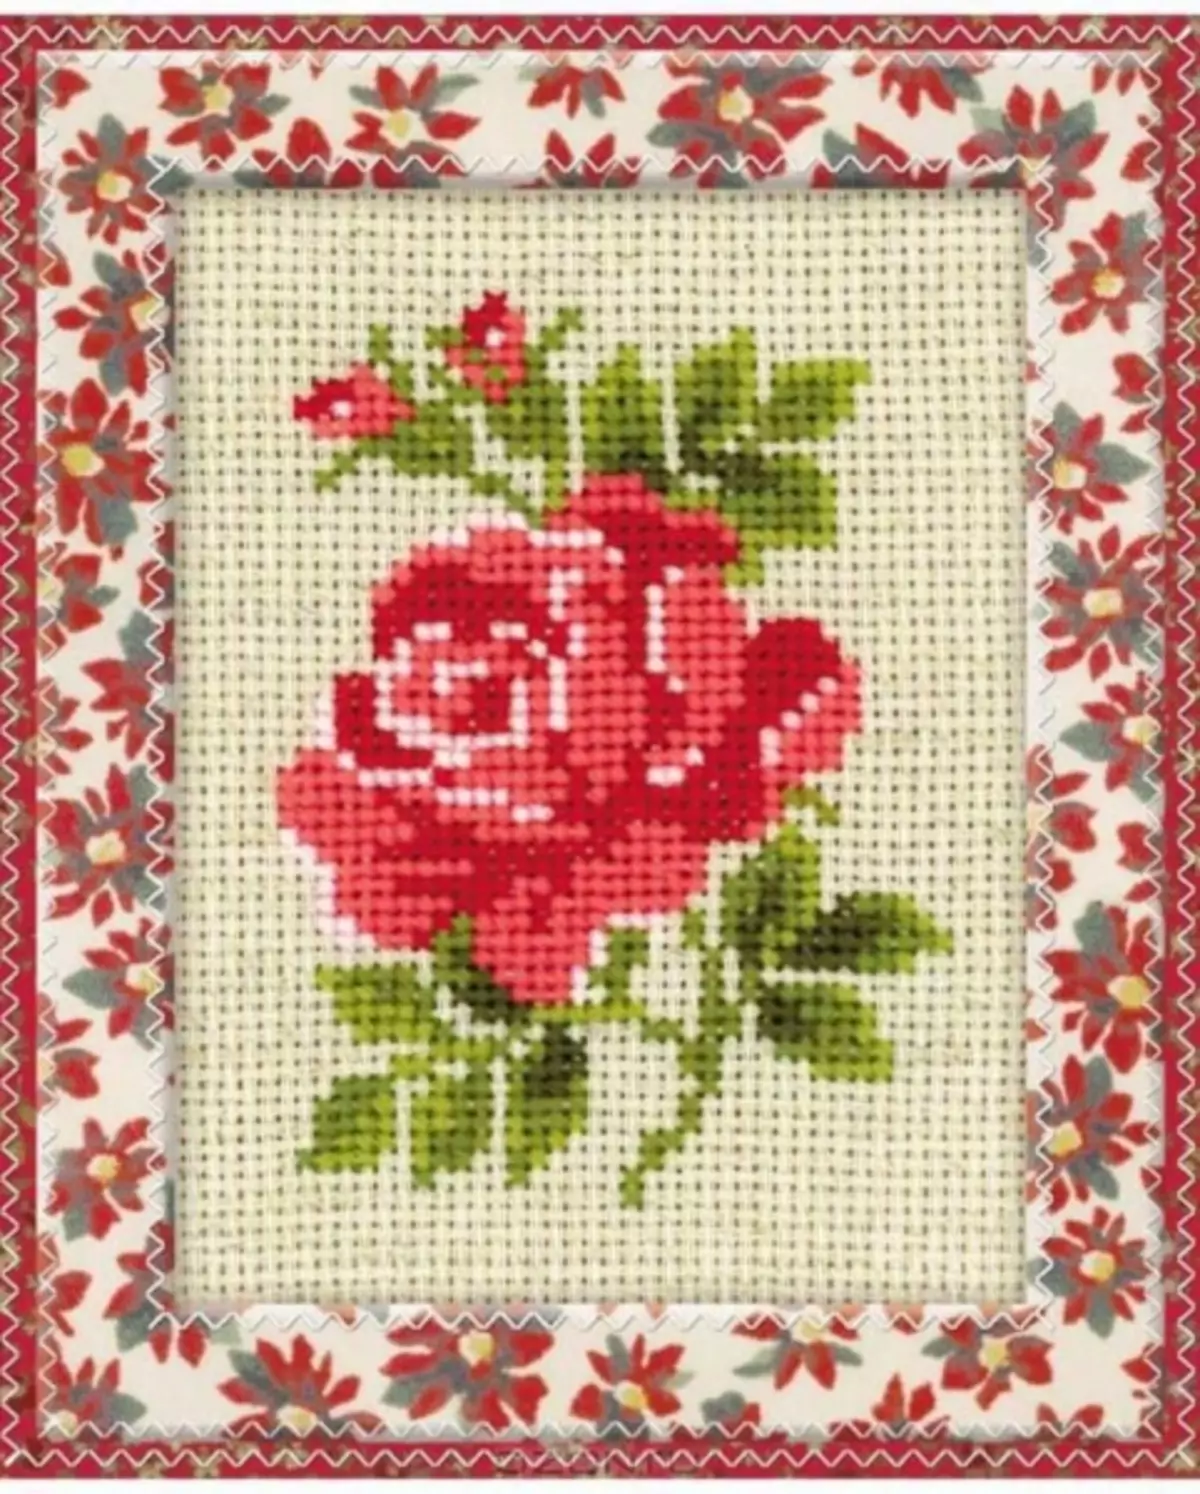 Rose Cross Embroidery: nagtatakda sa isang basket, puting palumpon sa isang plorera, babae para sa mga nagsisimula, triptych at butterflies